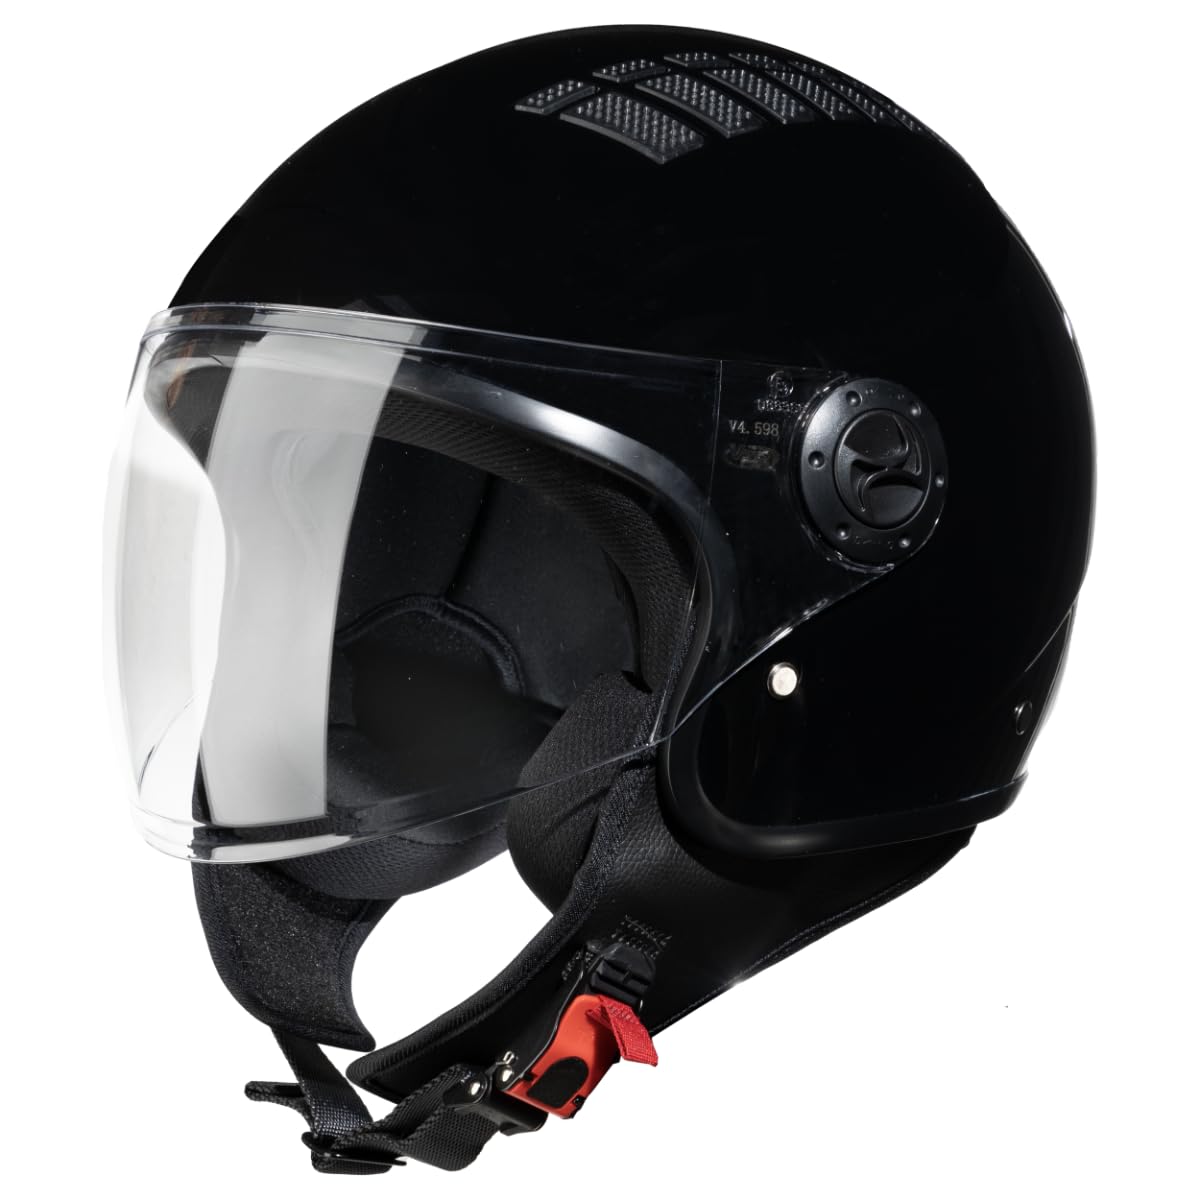 VINZ Como Jethelm mit Visier ECE 22.06 Zertifiziert | Roller Helm Mopedhelm Ideal Für Motoroller & Vespa | Herren und Damen | Komfortabler Motorradhelm XS-XL | Schwarz von Vinz